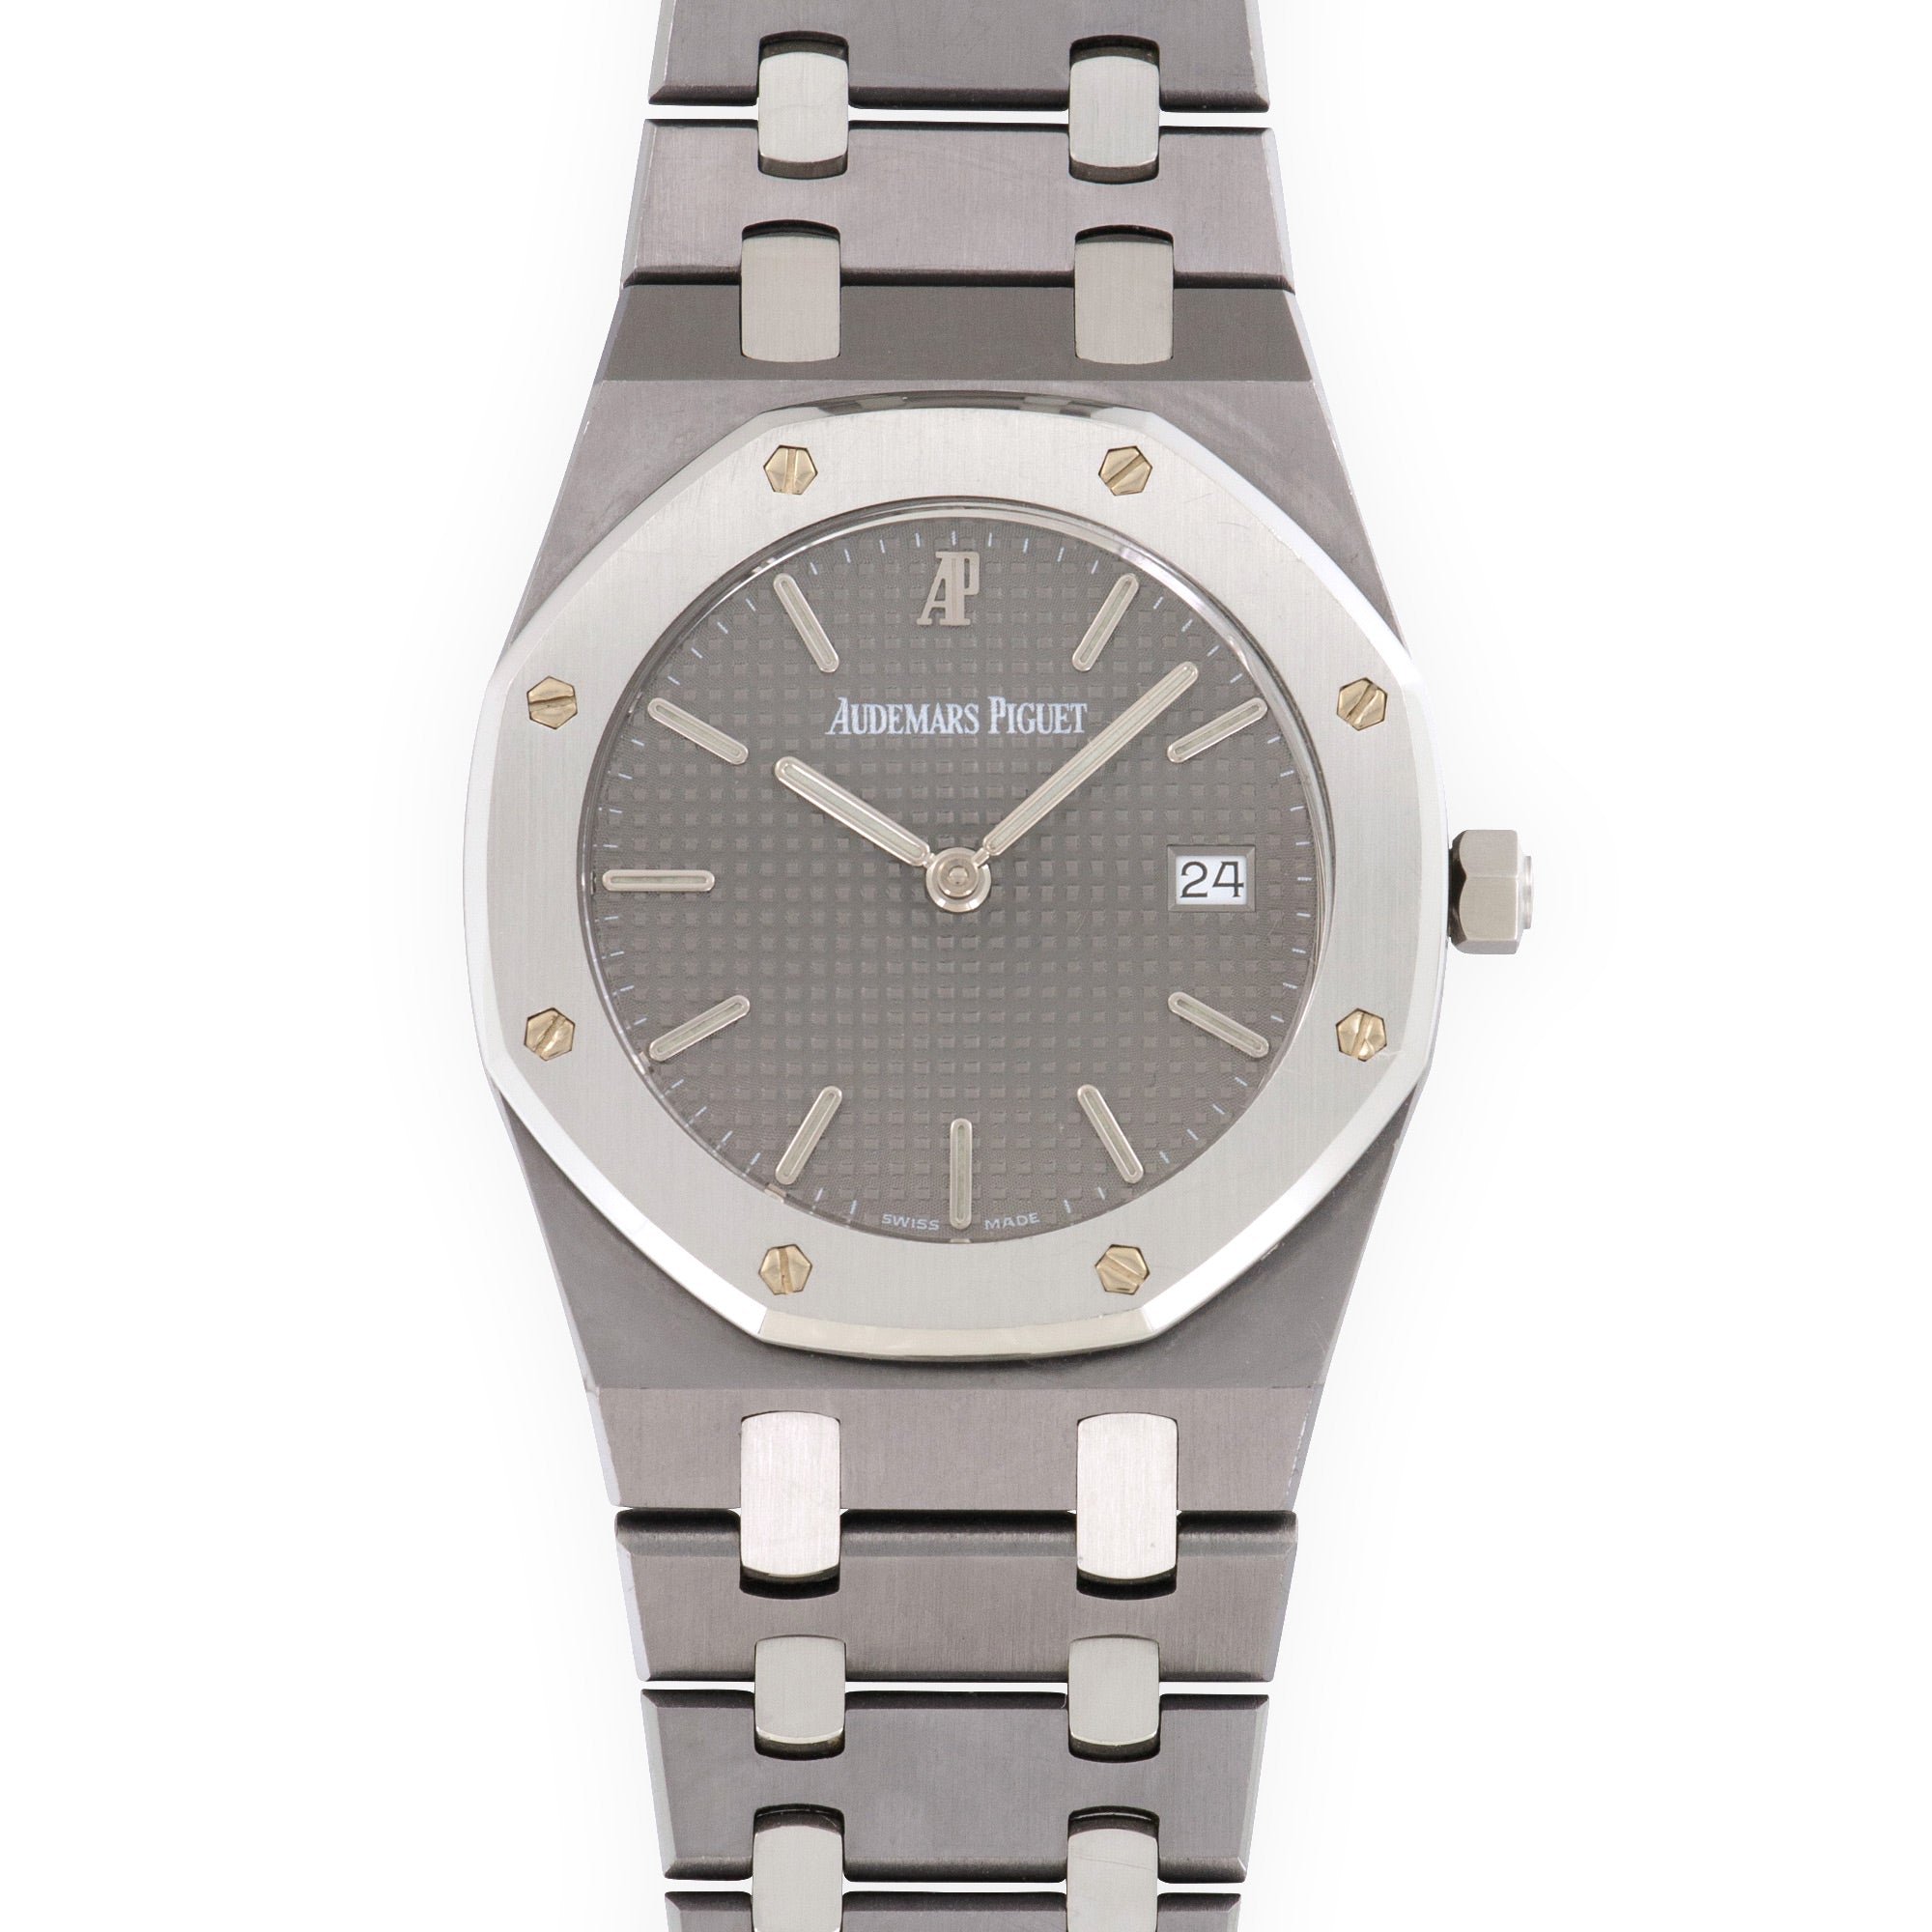 Audemars Piguet - Audemars Piguet Tantalum Royal Oak Watch Ref. 56175 - The Keystone Watches